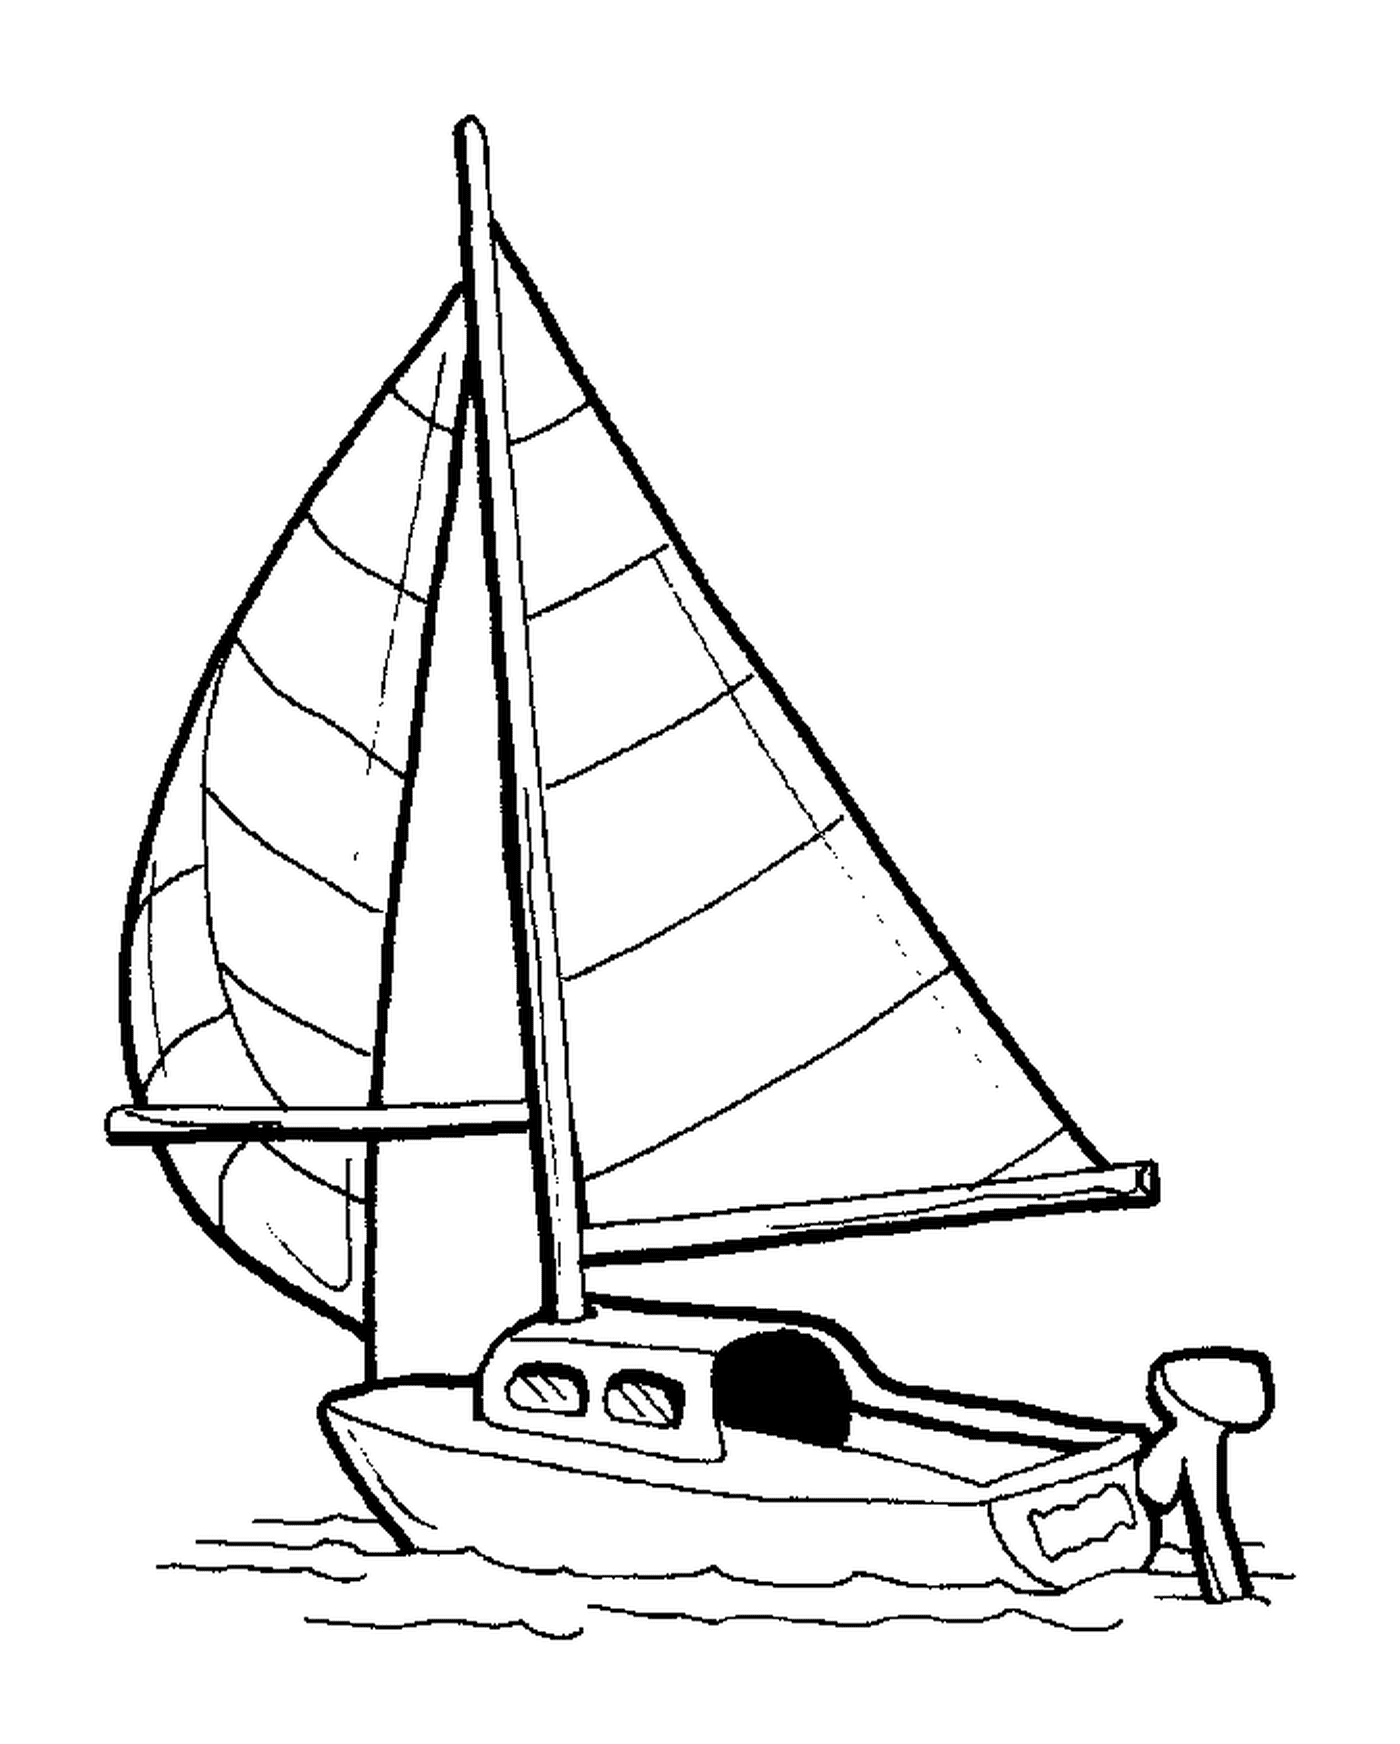  Маленькая парусная лодка, показываемая на рисунке 